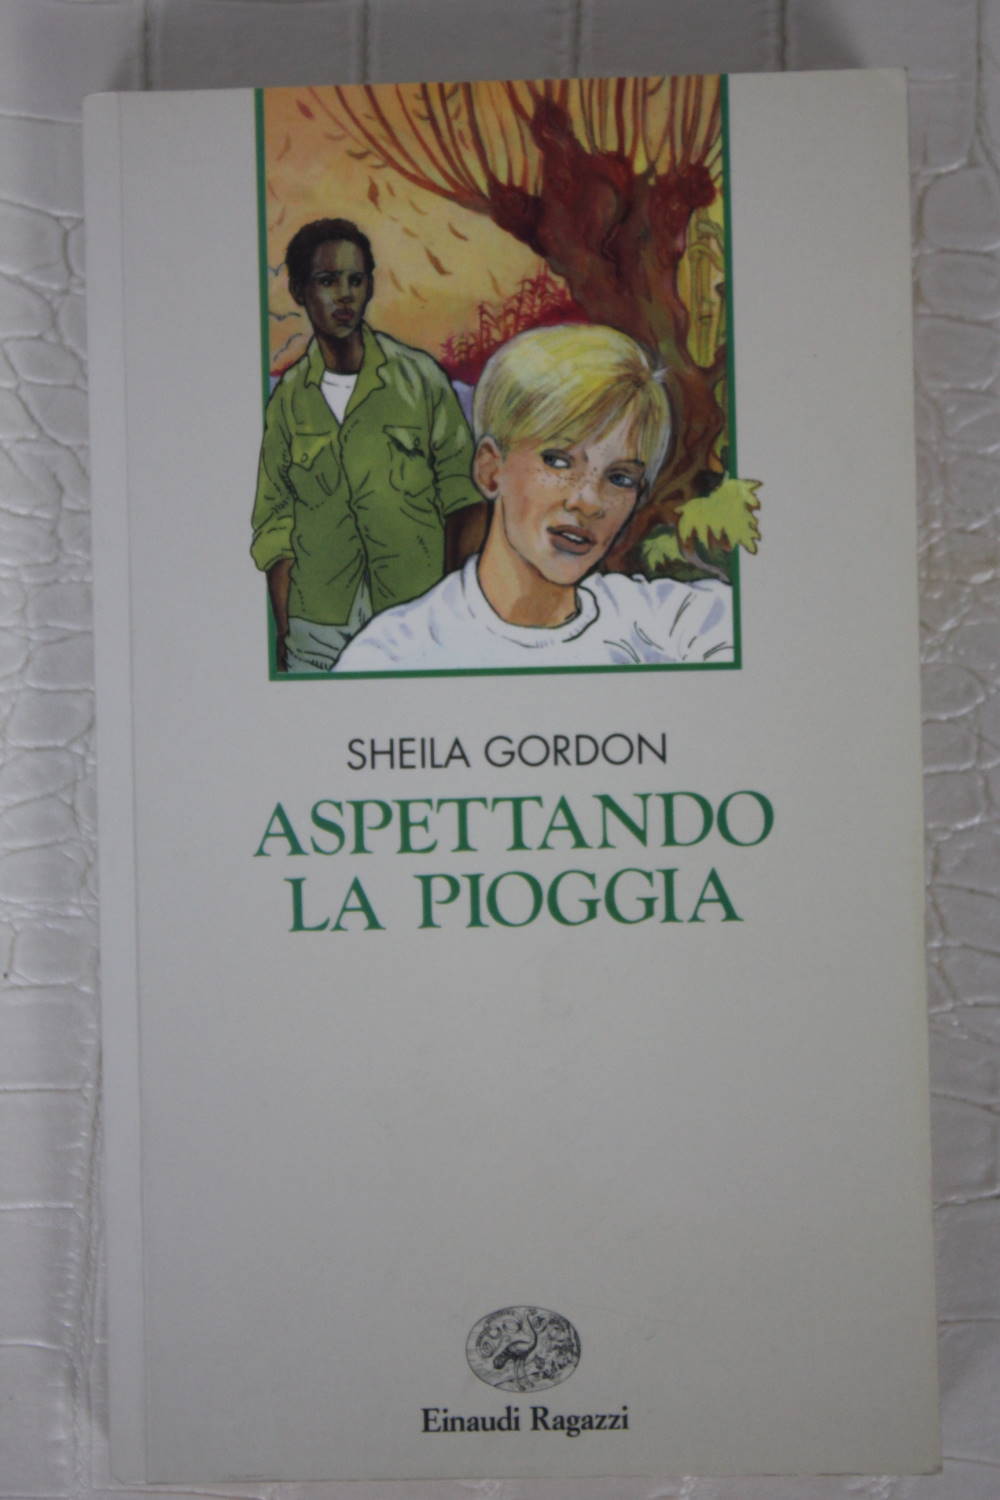 ASPETTANDO LA PIOGGIA di Sheila Gordon